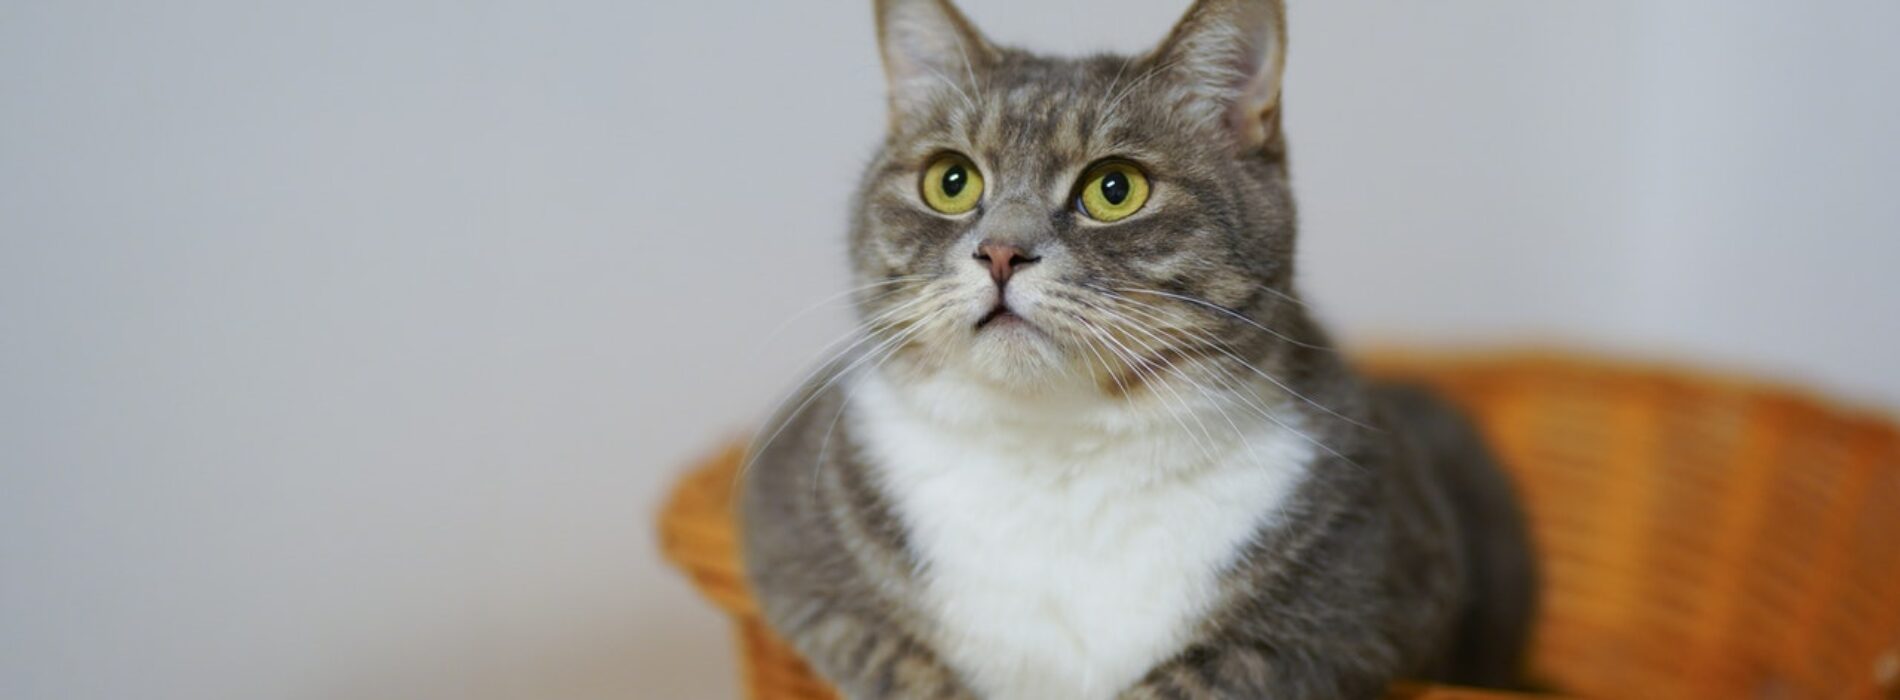 Czy furminator dla kota faktycznie zmienia na lepsze życie z pupilem?